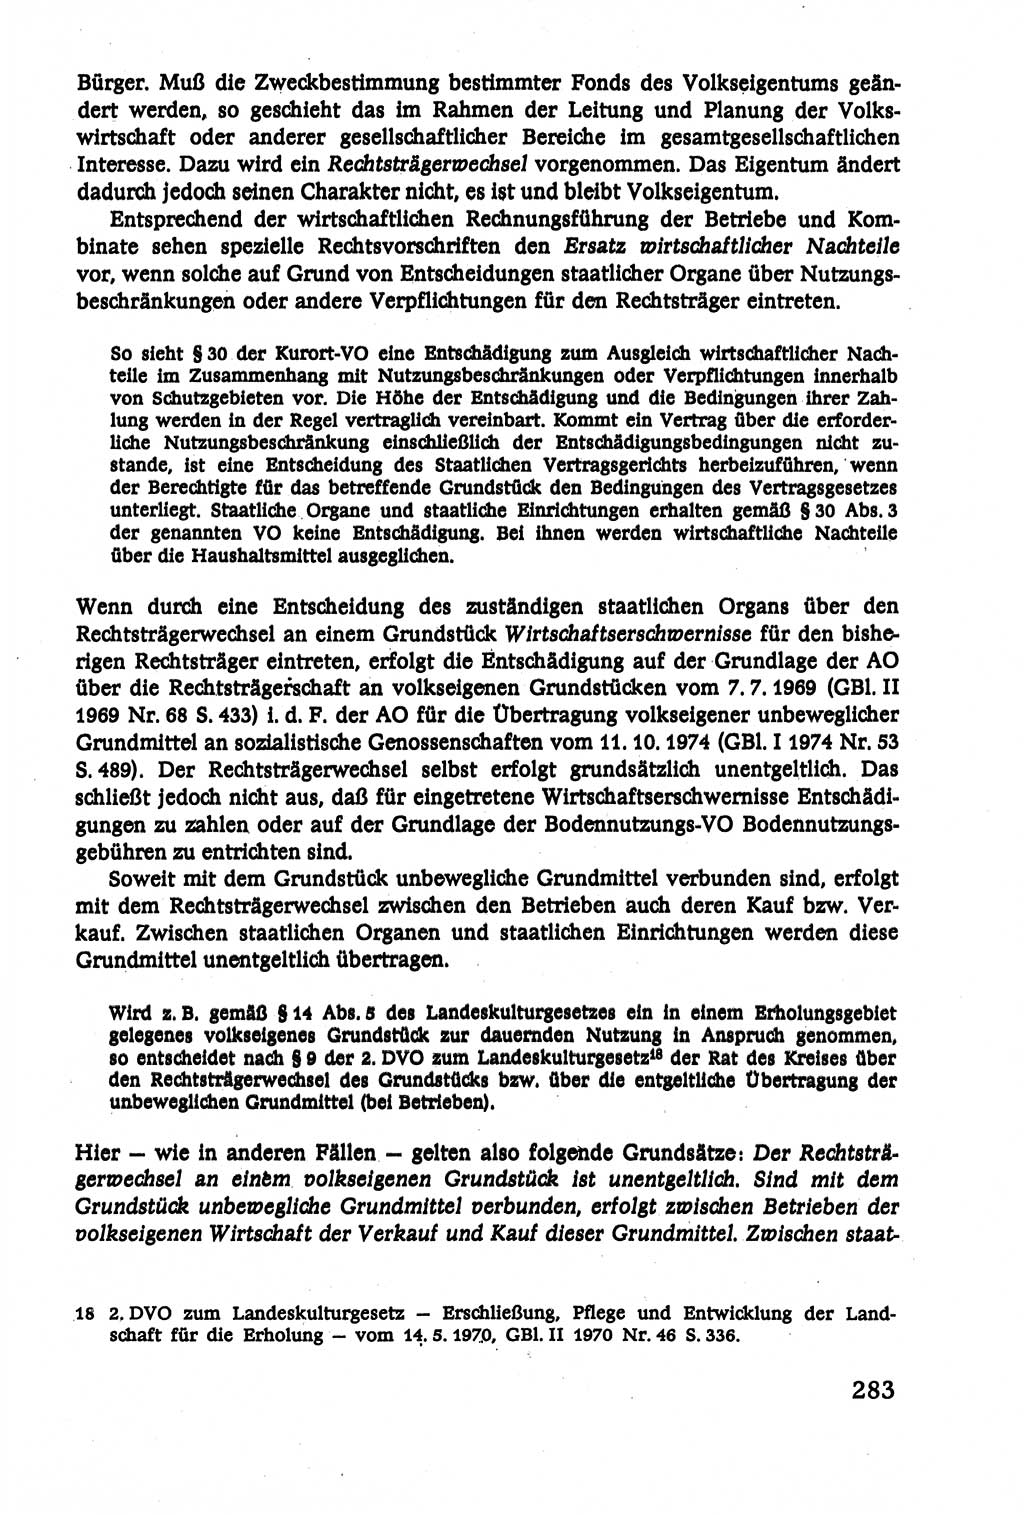 Verwaltungsrecht [Deutsche Demokratische Republik (DDR)], Lehrbuch 1979, Seite 283 (Verw.-R. DDR Lb. 1979, S. 283)